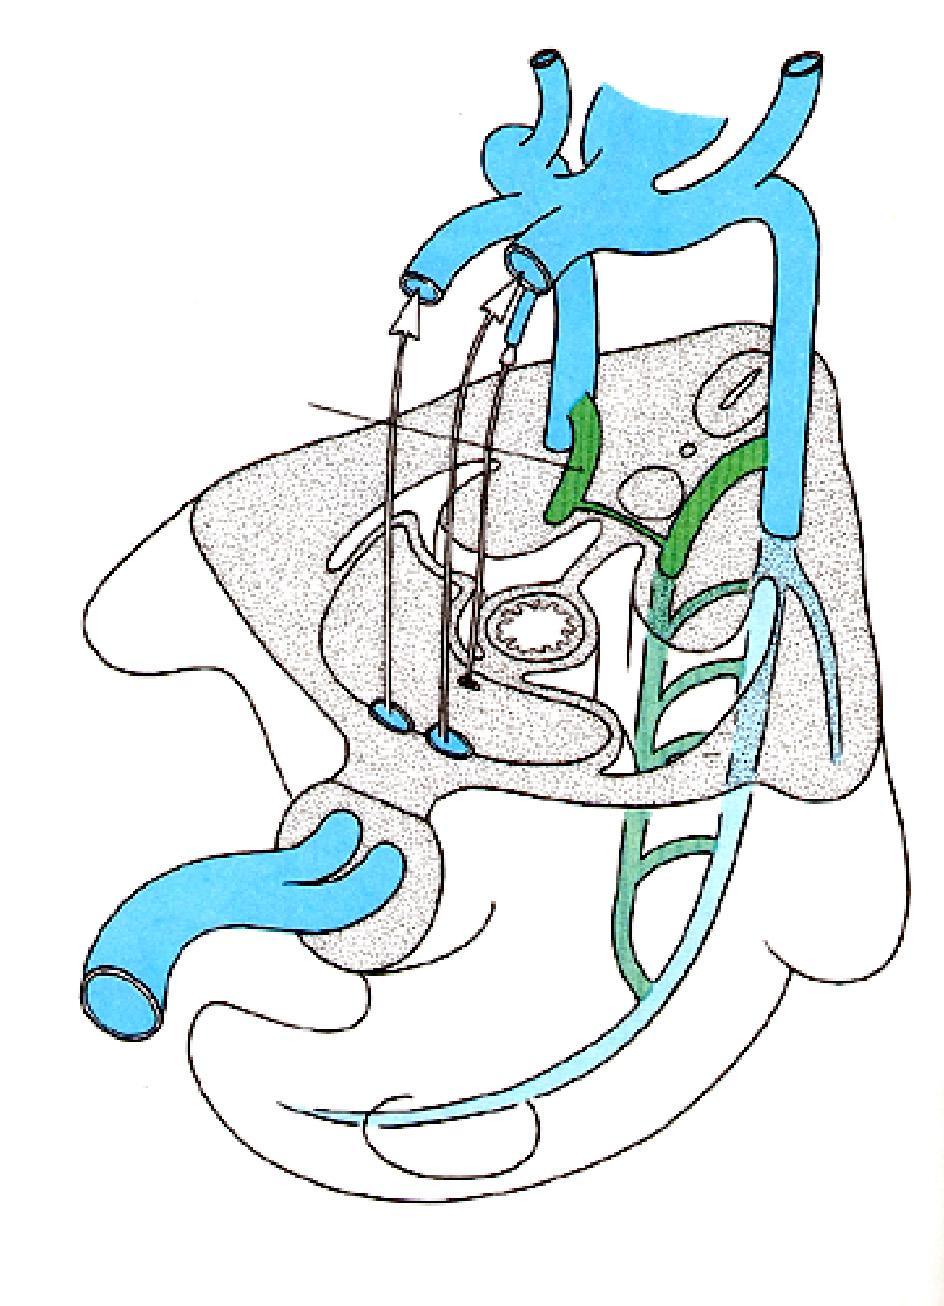 Il sistema venoso: le vene sotto-cardinali (6 a settimana) Durante questo periodo il cambiamento maggiore del sistema venoso riguarda la comparsa delle vene sottocardinali che decorrono medialmente